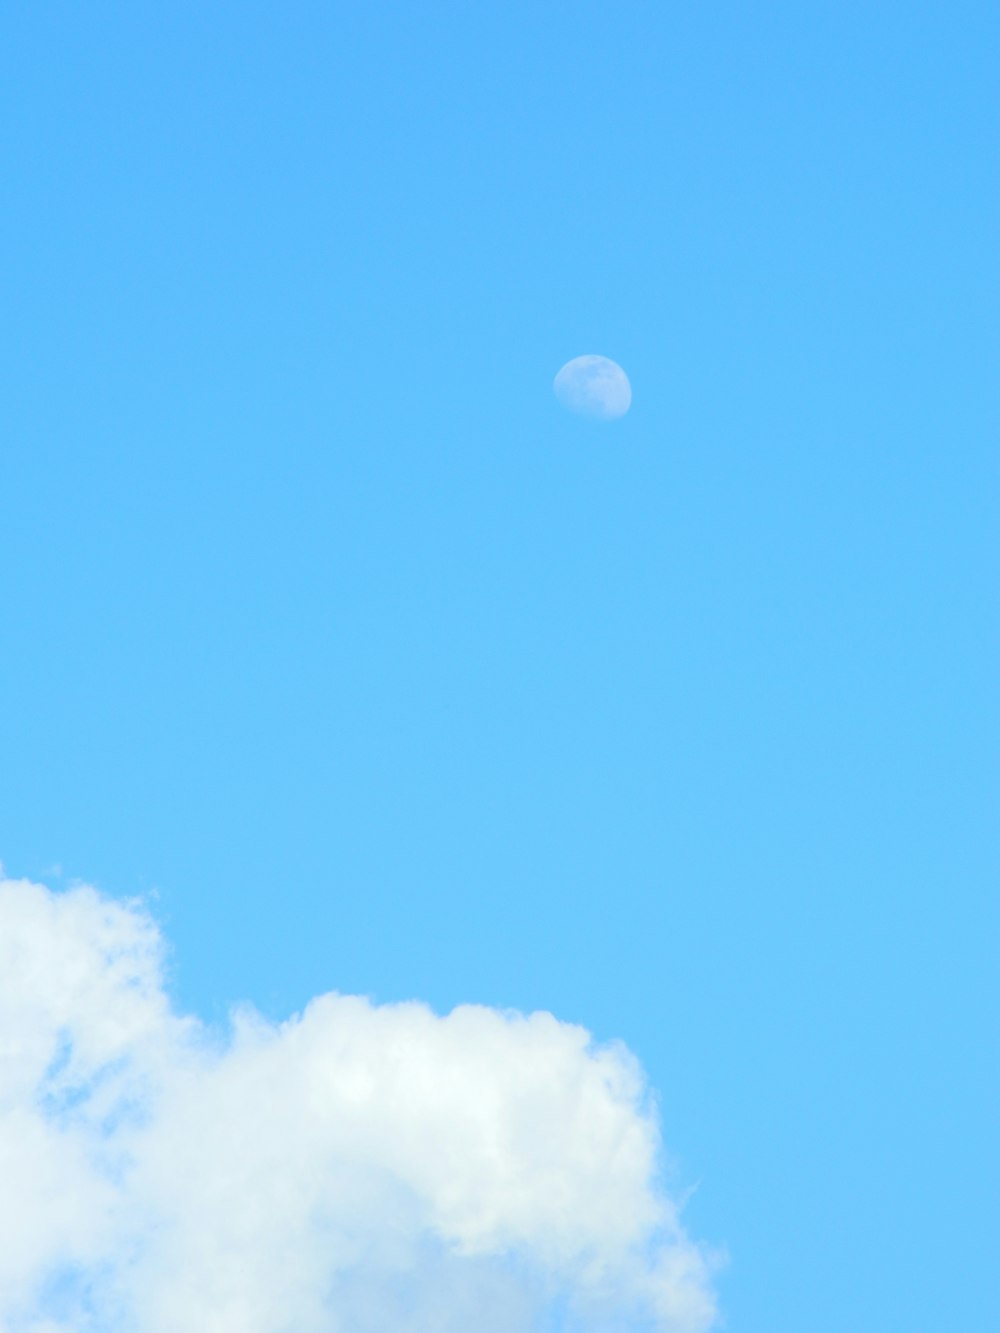 Ein Flugzeug fliegt durch einen blauen Himmel mit Wolken